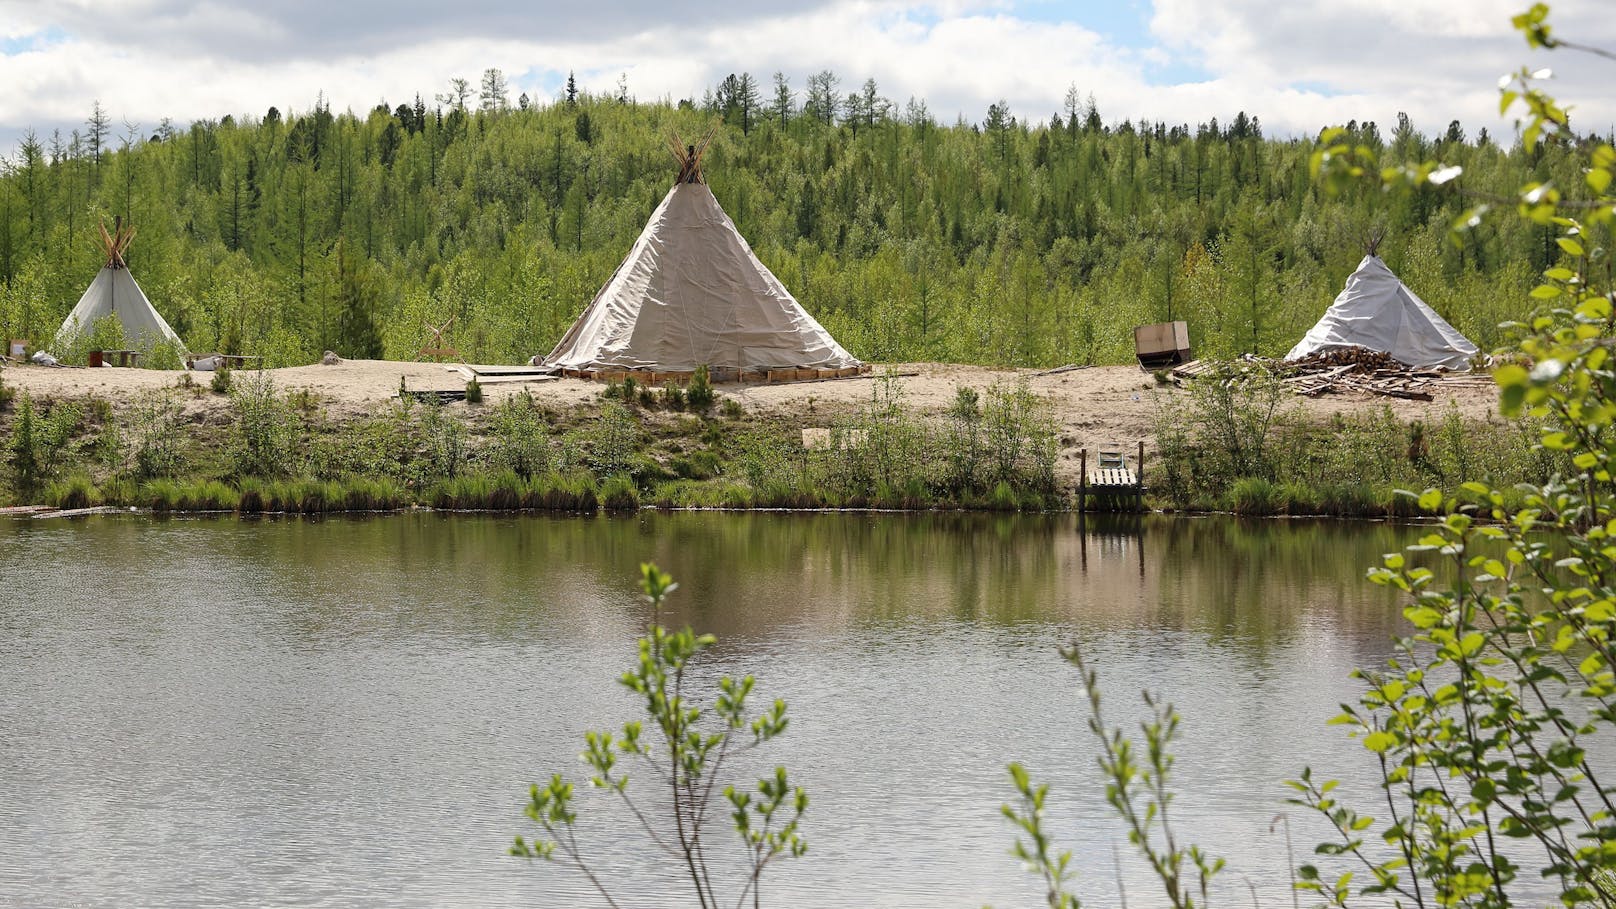 Die vier Rentier-Züchter hatten ihre Zelte am Rande eines Sees tief in der sibirischen Taiga aufgeschlagen. Symbolbild